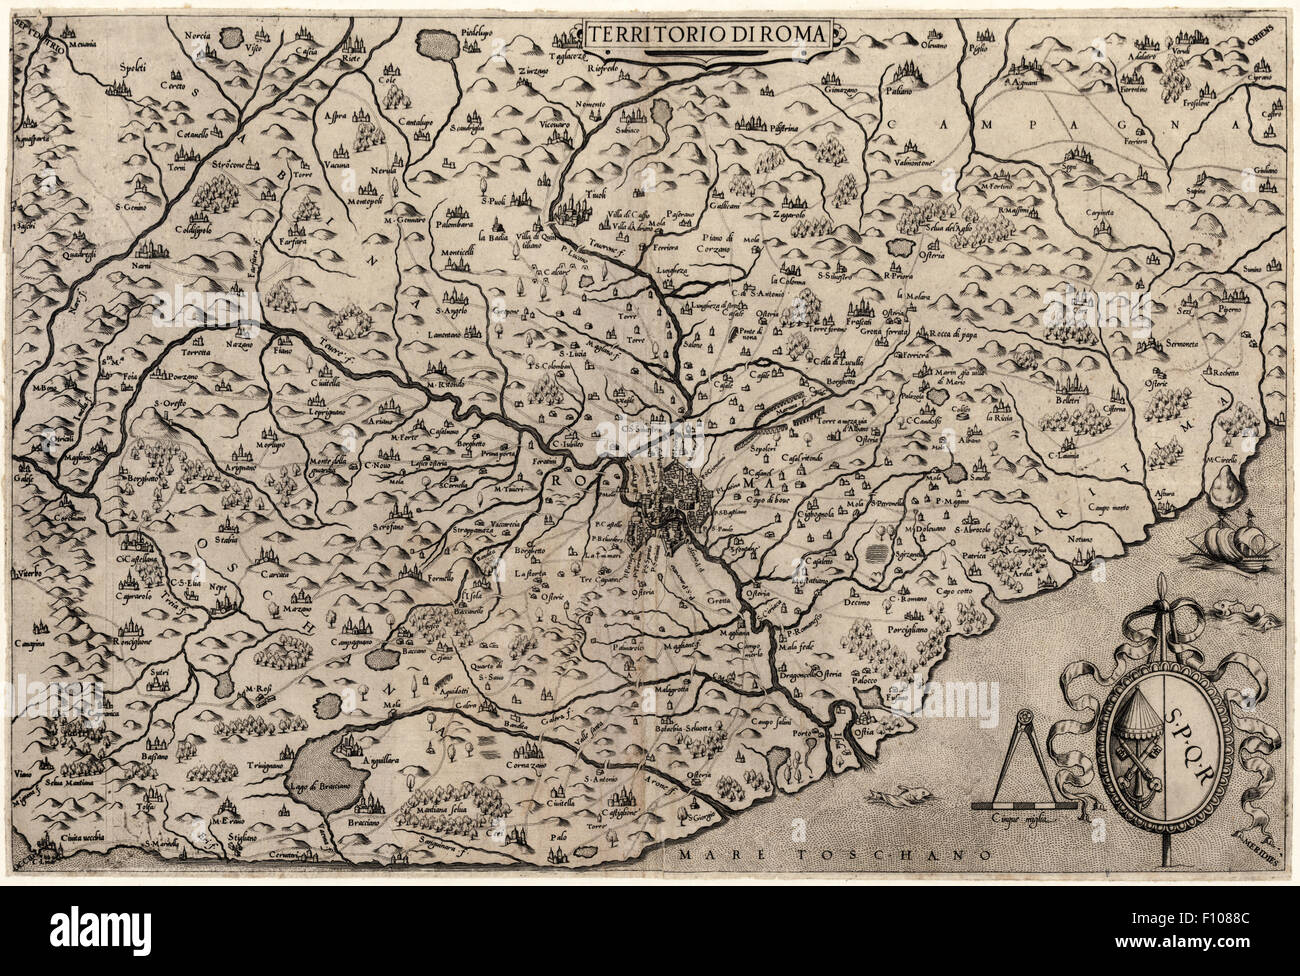 "Territorio di Roma" - Karte von Rom und umliegenden Gebieten 1559 von Giovanni Francesco Camocio (1552-1575) nach der Kartographie des Eufrosino della Volpaia. Kartusche verfügt über SPQR und das Symbol des Symbols von der Kamera Apolistica des Vatikans. Stockfoto